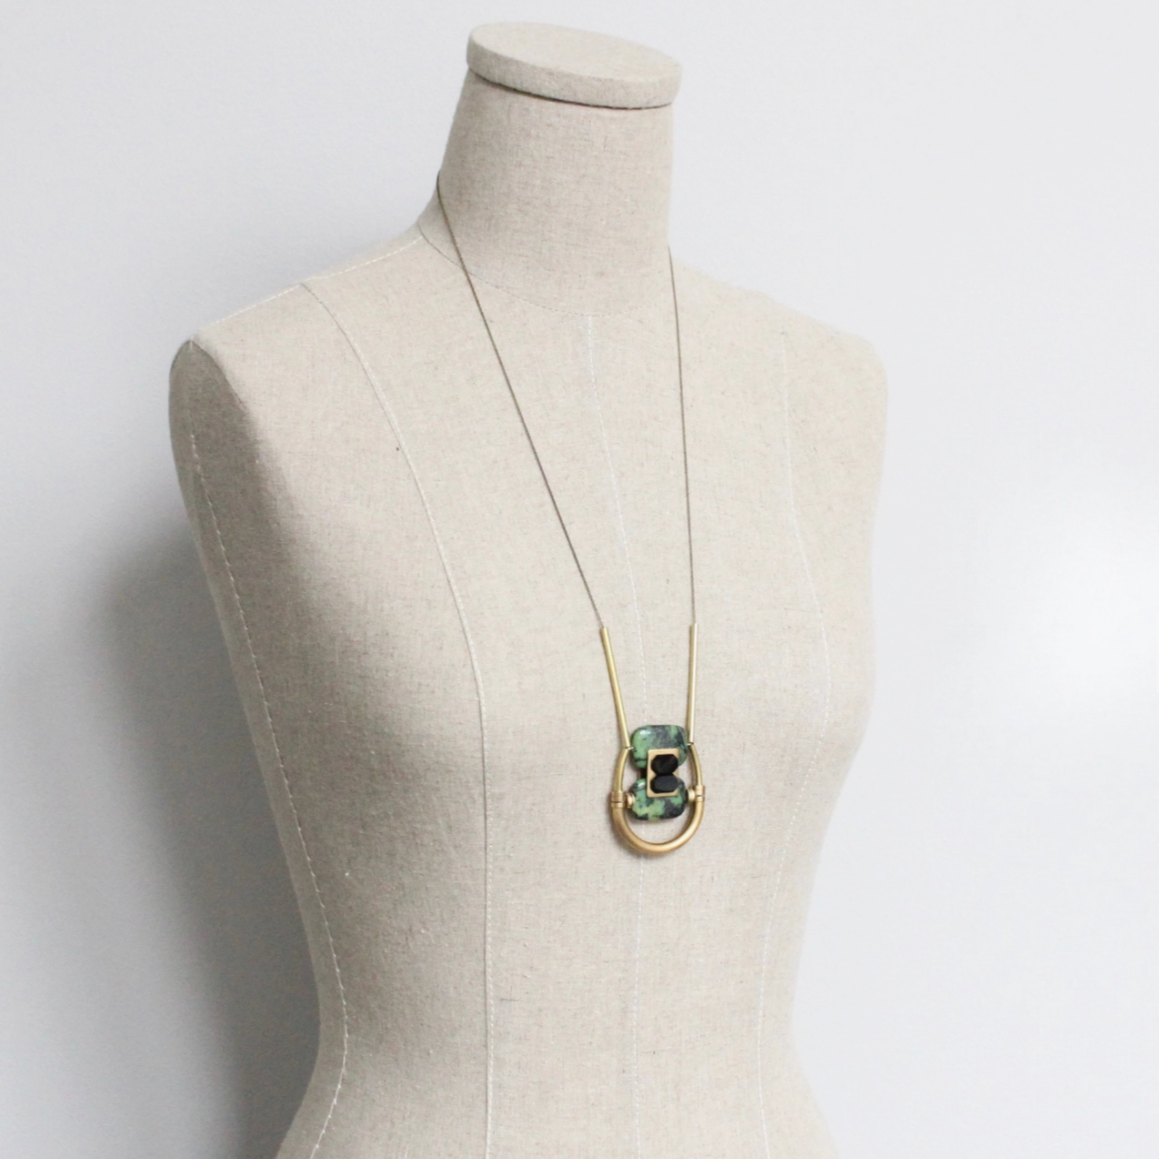 Zoisite & Vintage Glass Pendant Necklace